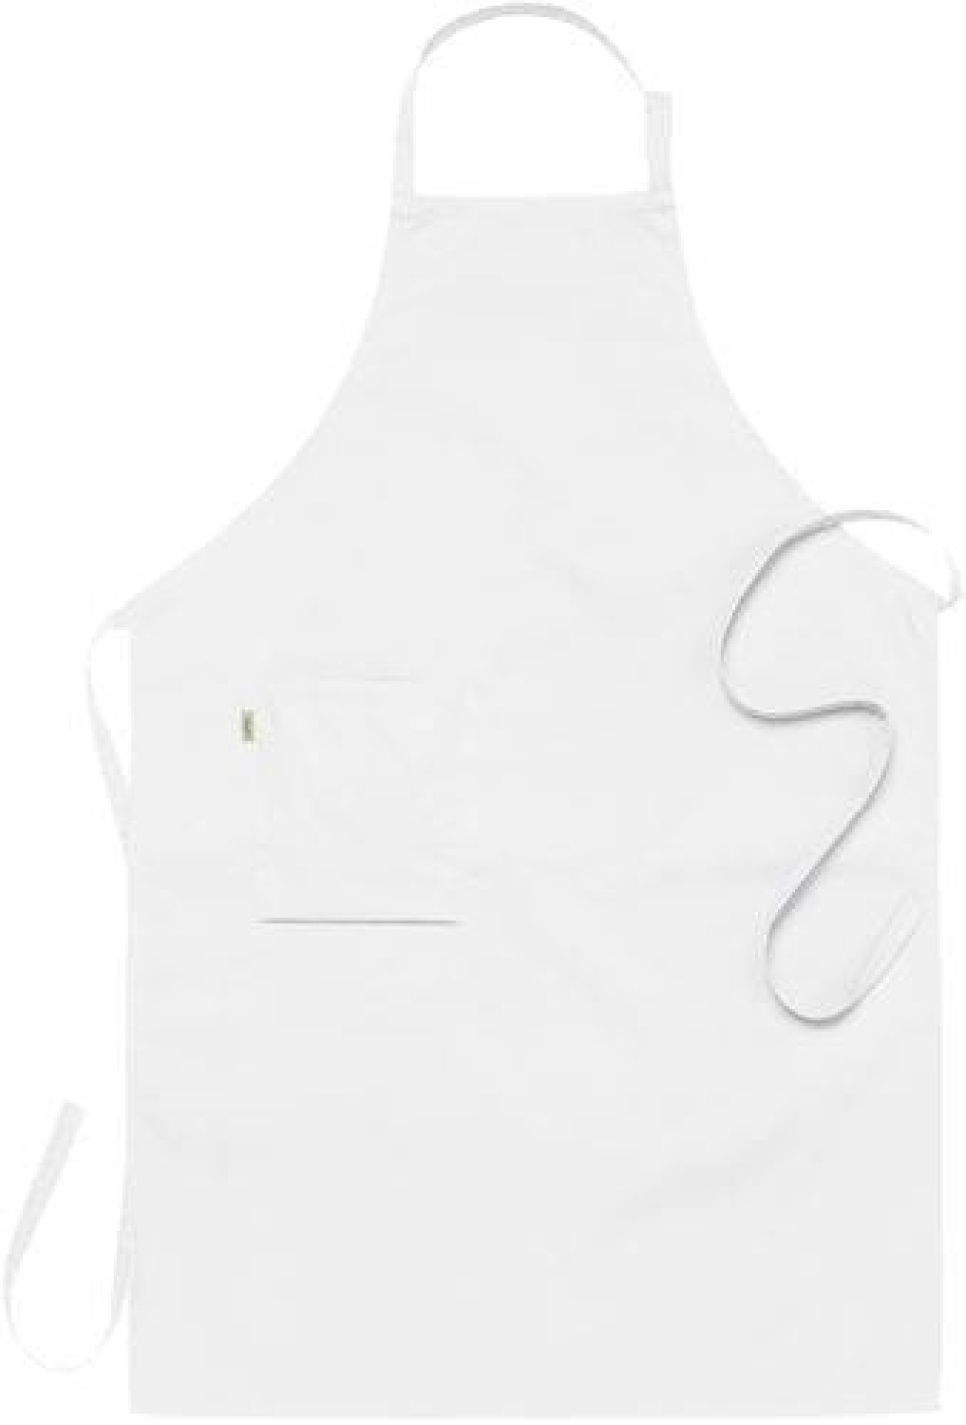 Smækforklæde, hvid 75 x 110 cm - Segers i gruppen Madlavning / Køkken tekstiler / Forklæder hos The Kitchen Lab (1092-10846)